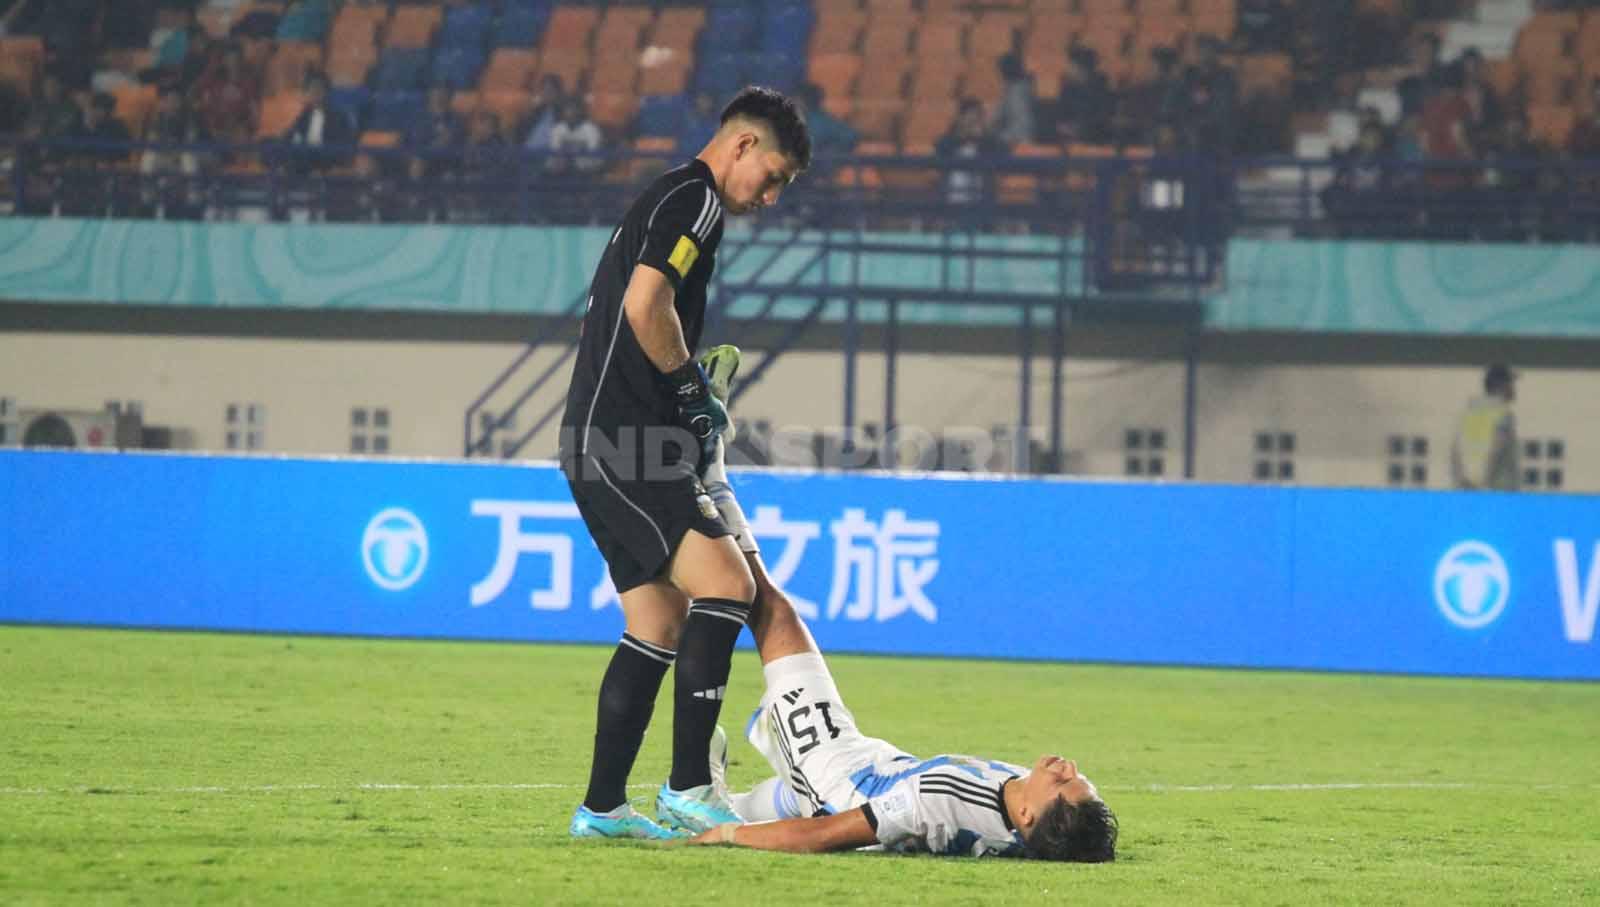 Penjaga gawang Argentina U-17, Diaz Froilan membantu rekannya Gimenez Juan yang mengalami masalah di kakinya, saat menghadapi Senegal U-17 pada pertandingan Grup D Piala Dunia U-17 2023 di Stadion Si Jalak Harupat, Kabupaten Bandung, Sabtu (11/11/23). Arif Rahman/INDOSPORT